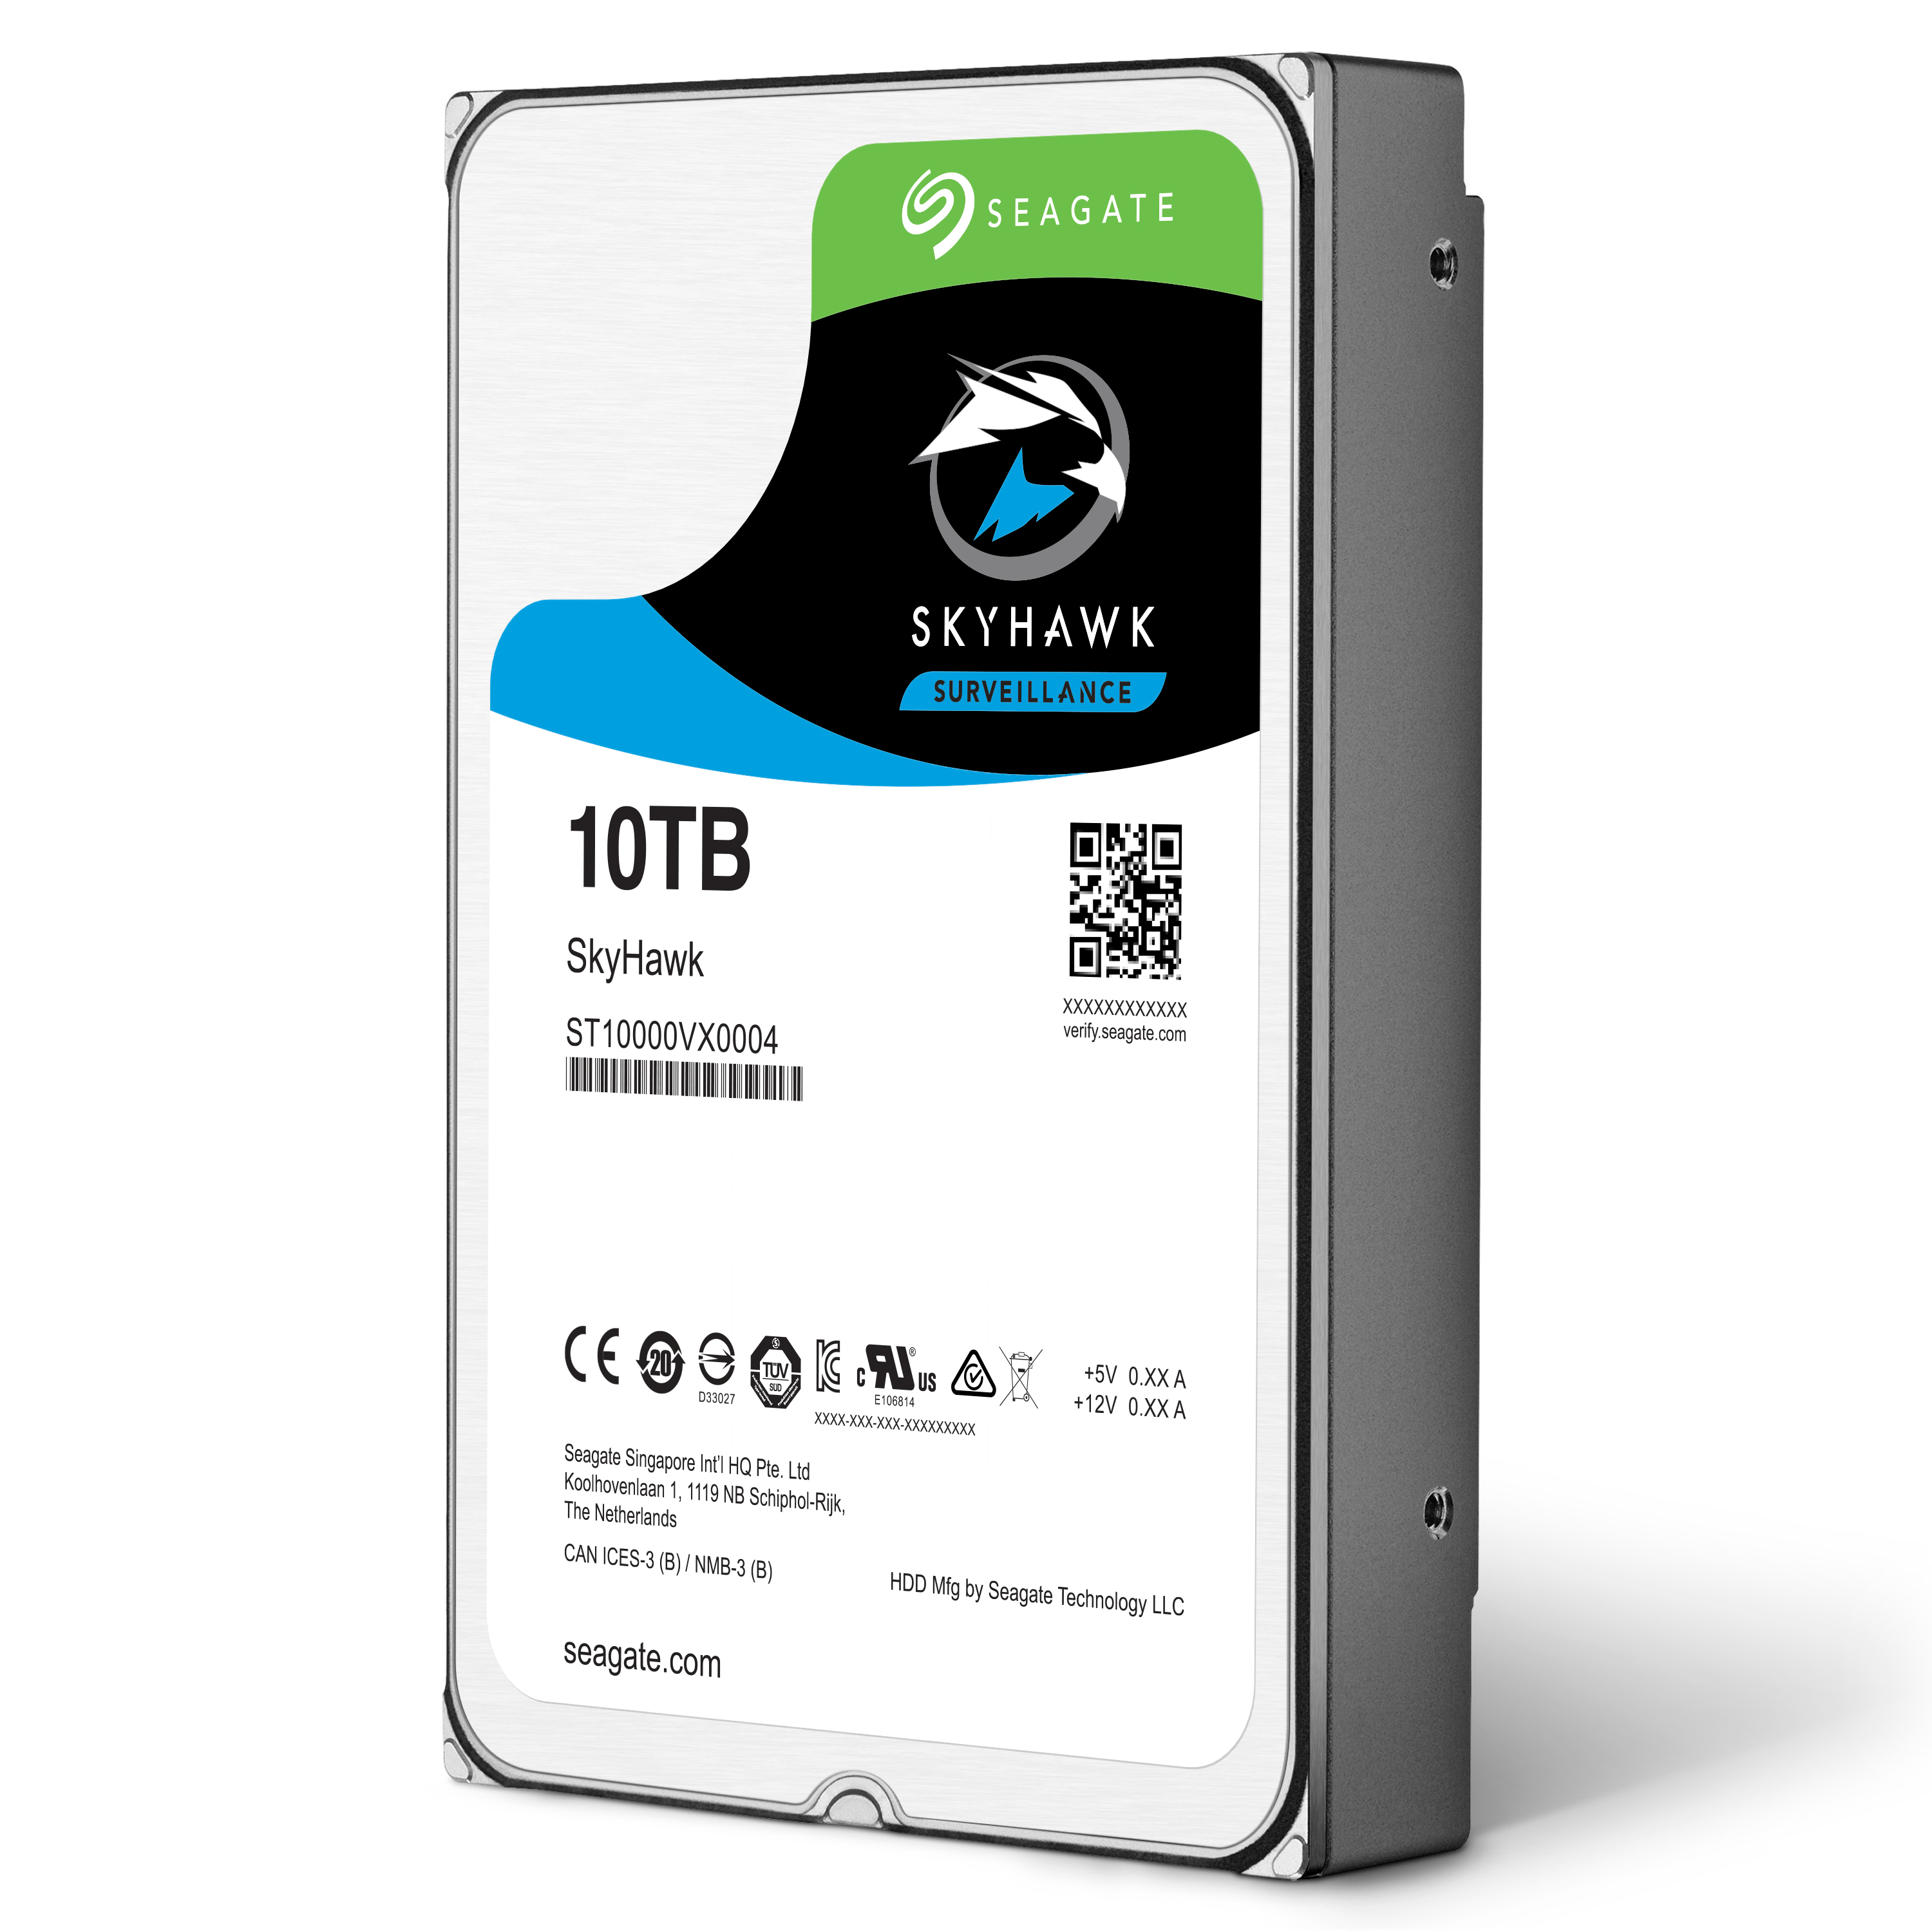 Seagate, 10TB kapasiteli sabit disklerini satışa sundu